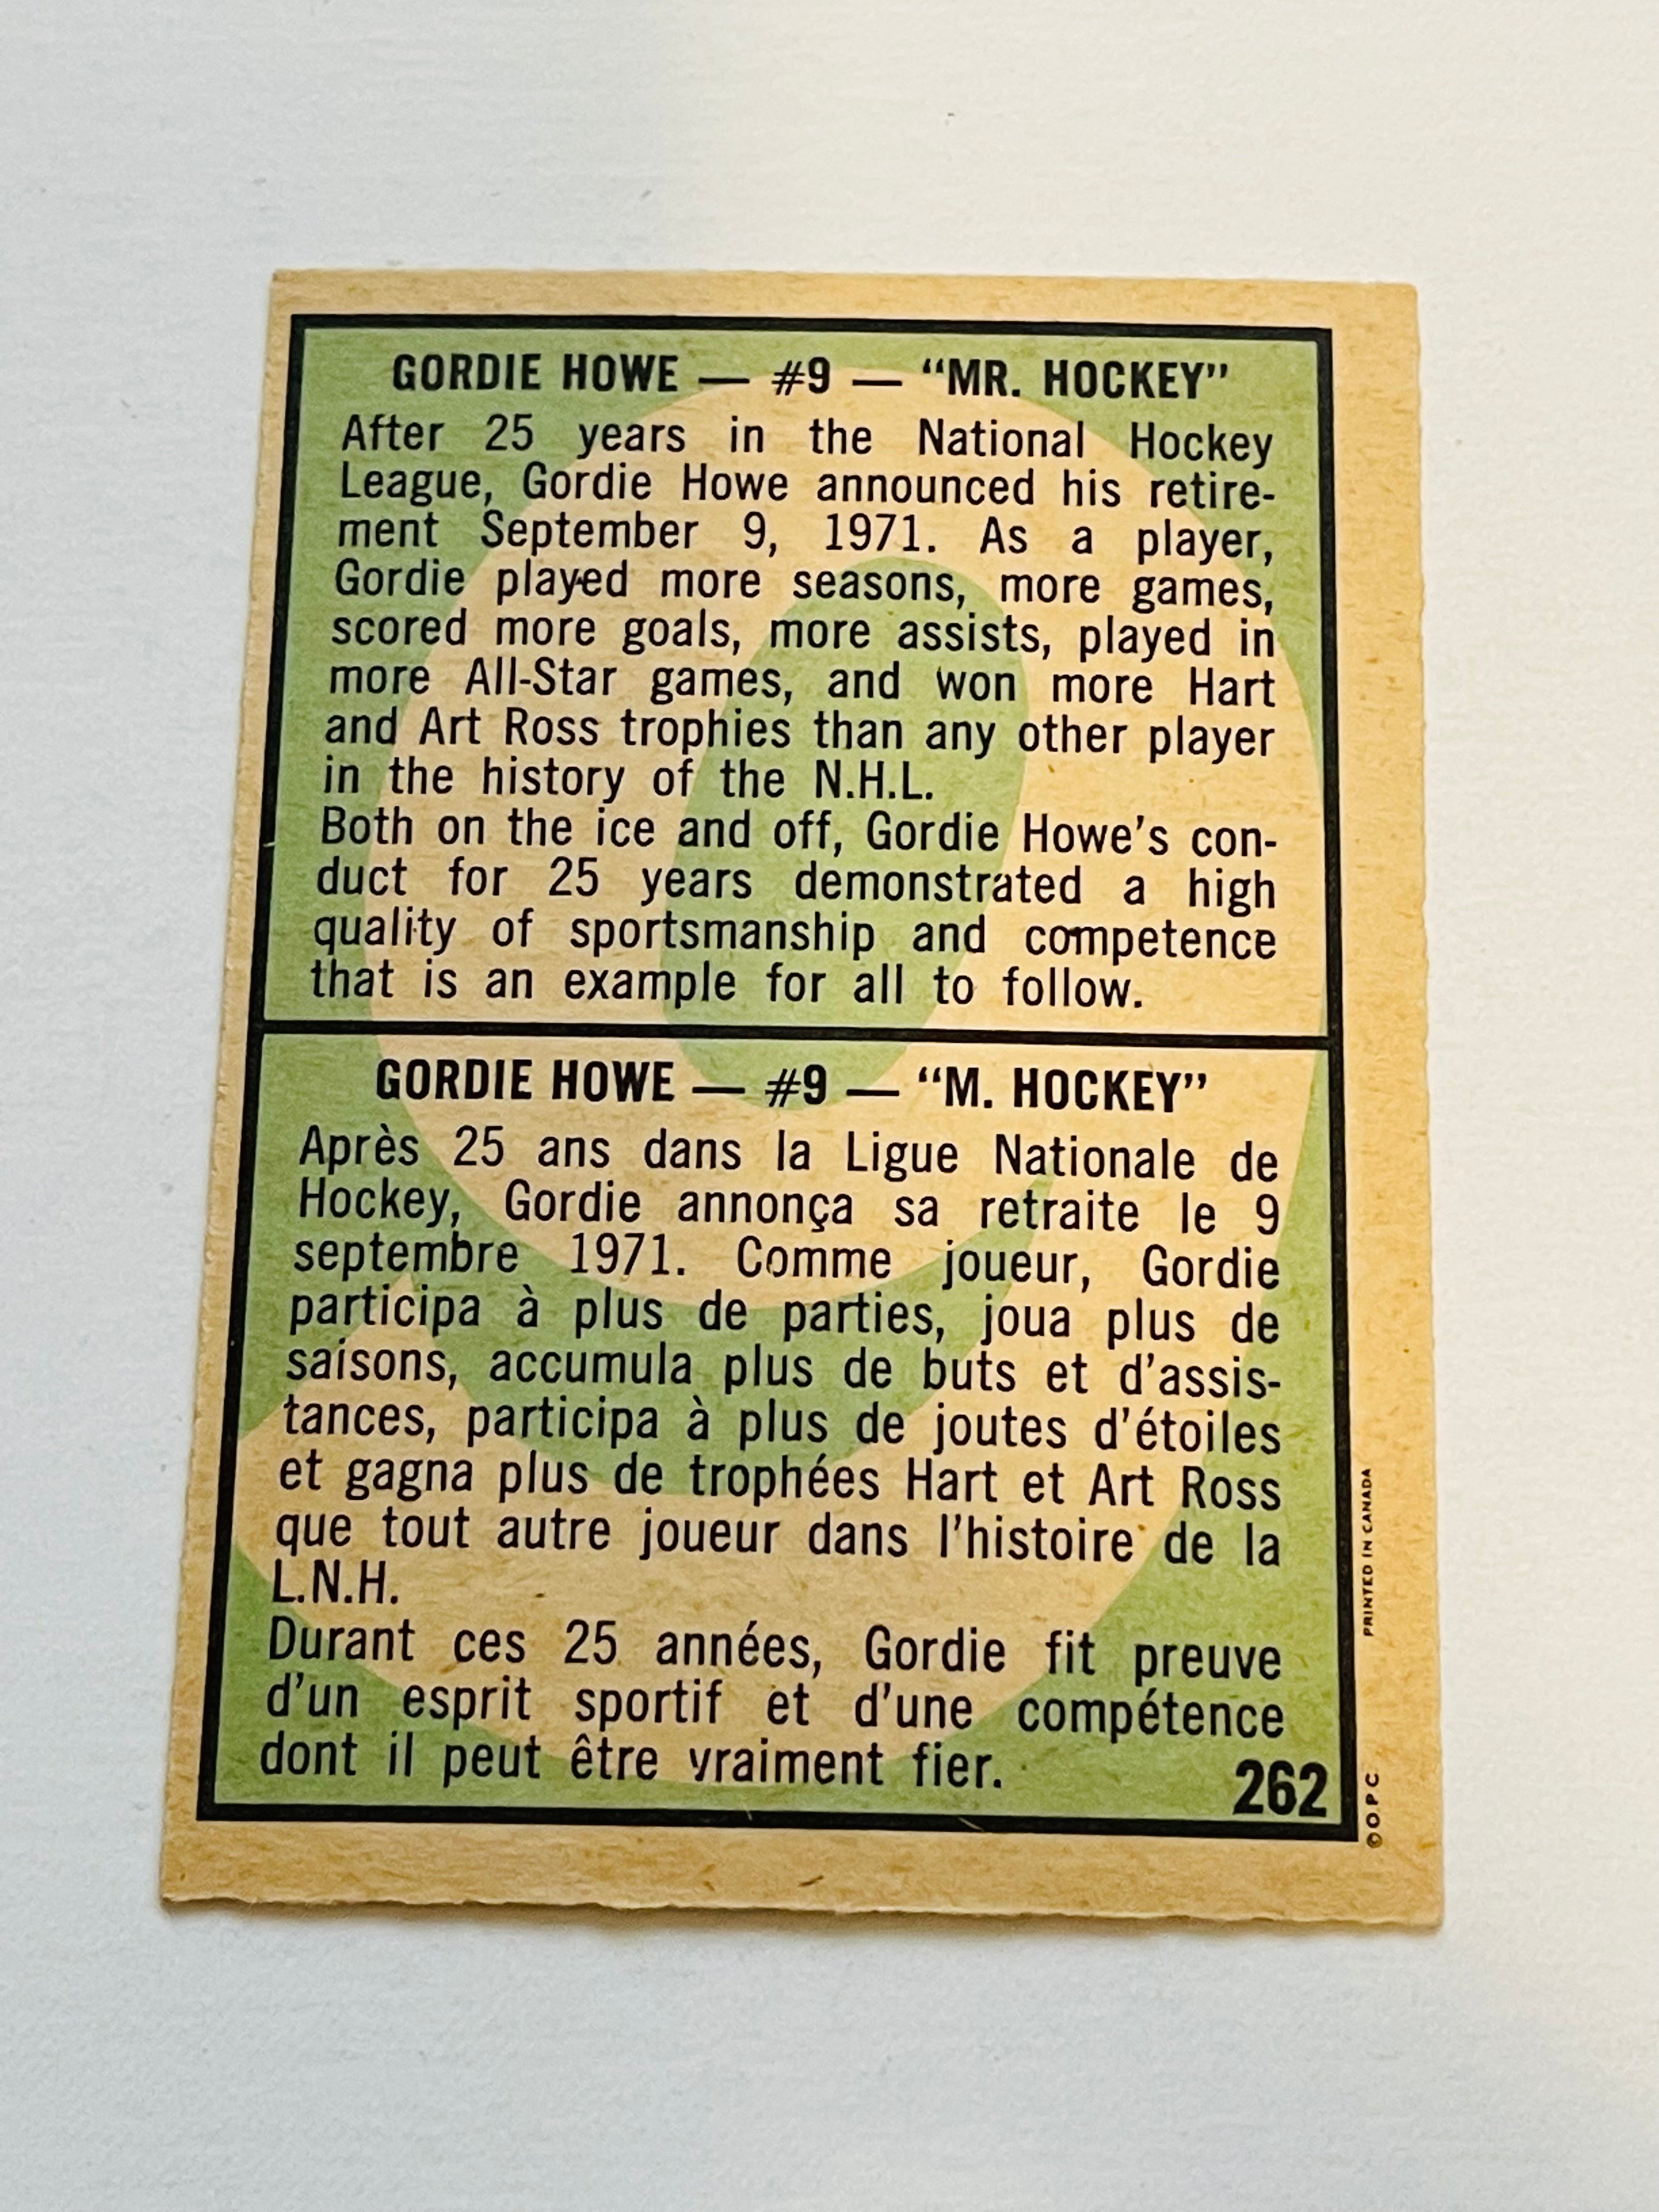 Gordie Howe Mr. Hockey opc card 1970